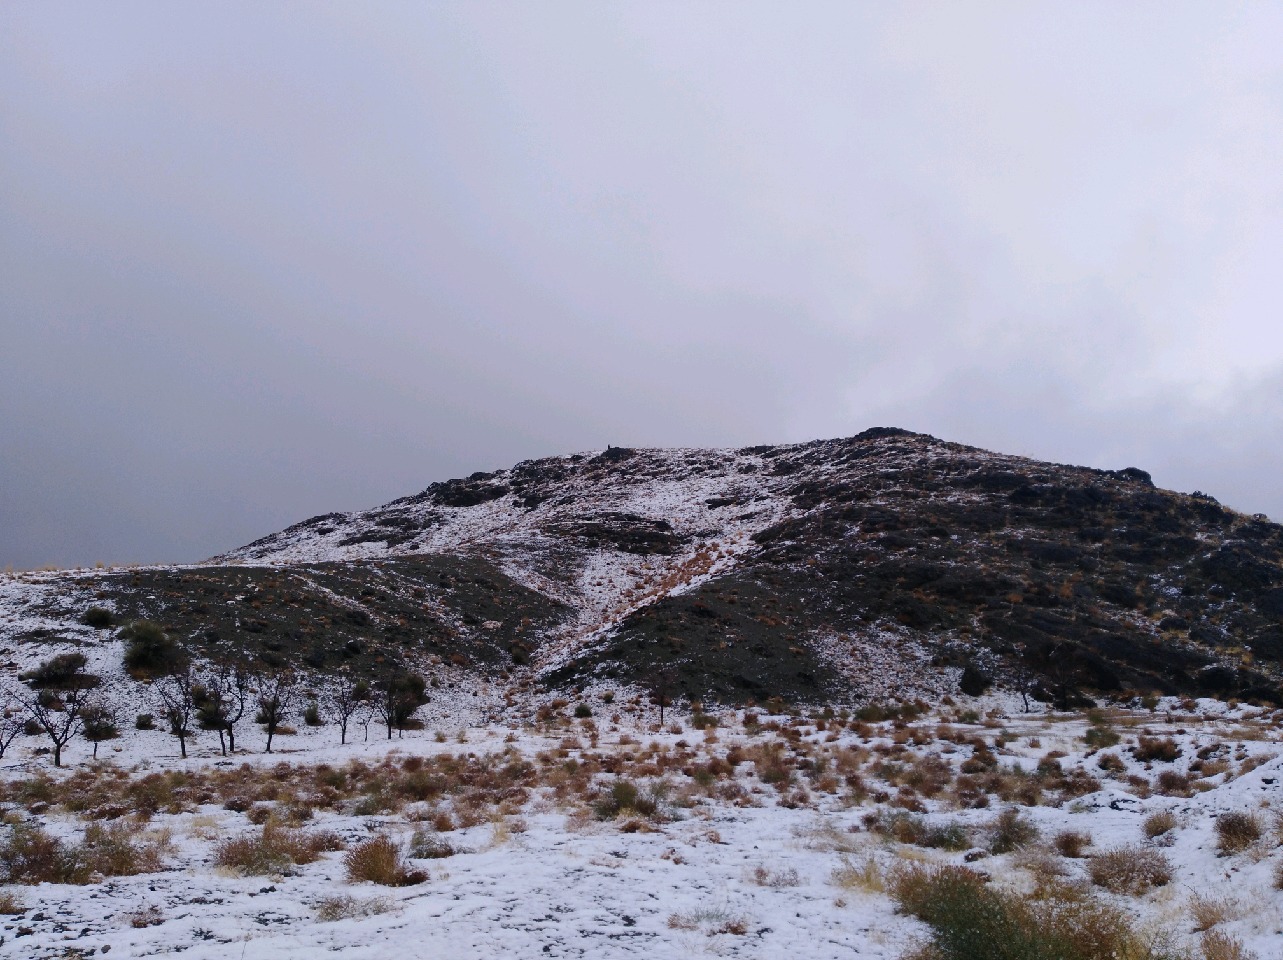 طبیعت زیبای برفی ارتفاعات بیرجند عکس موبایلی ابوالفضل حسن پور 